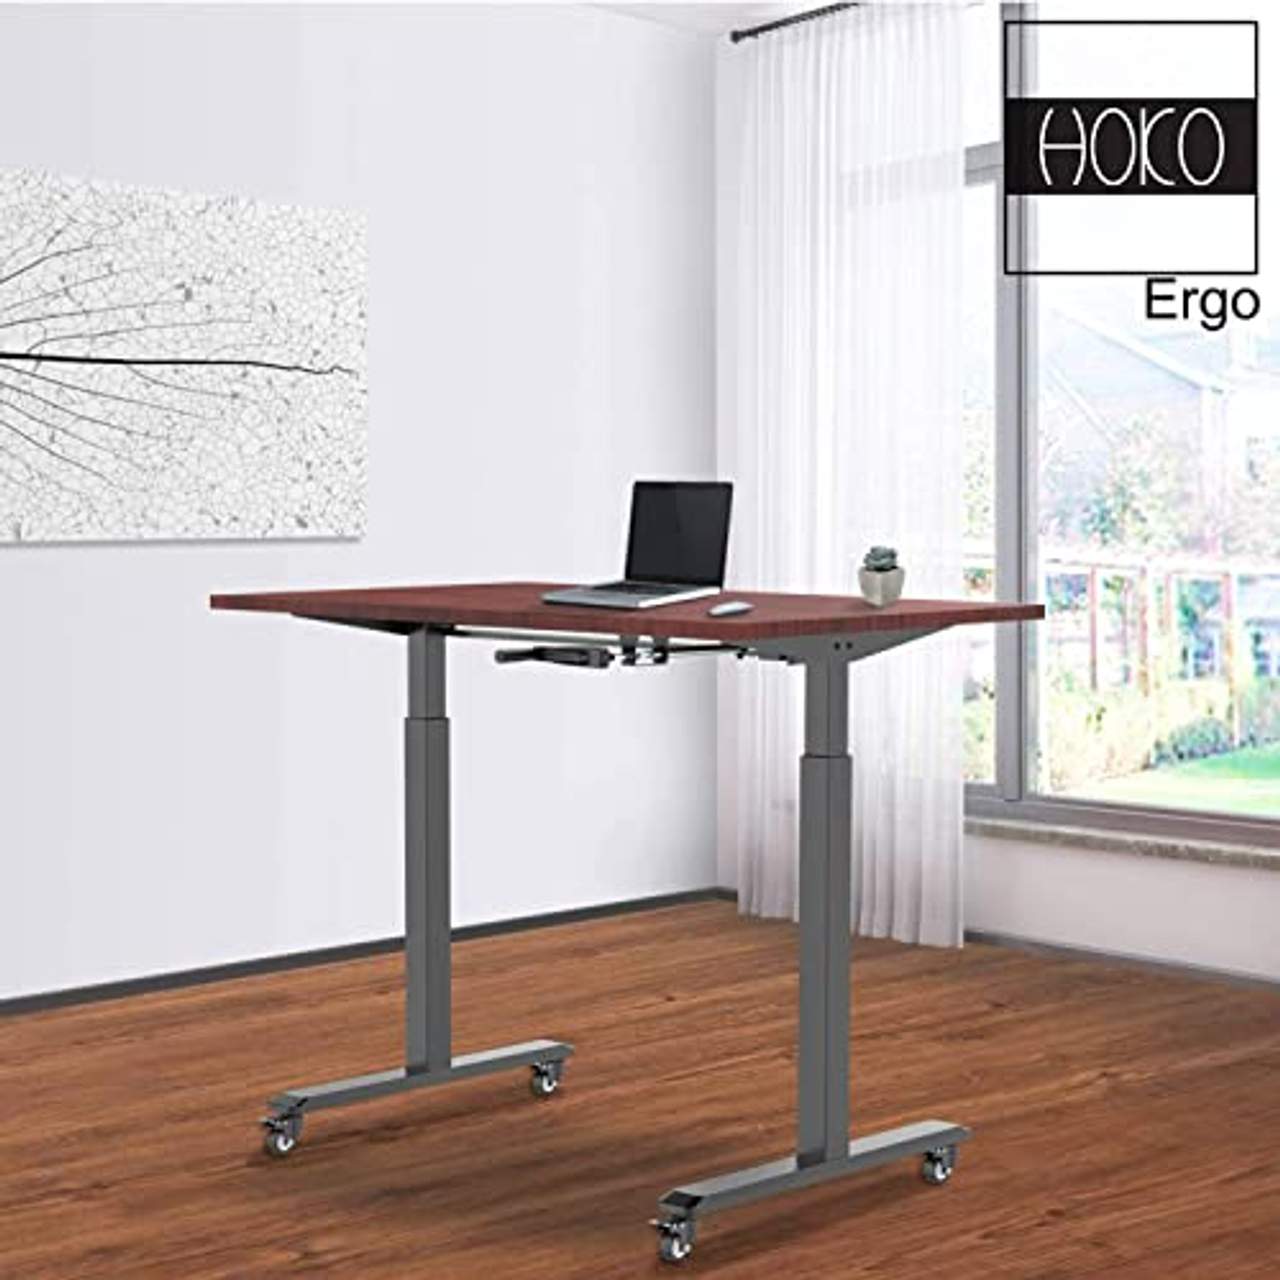 HOKO Ergo Tischgestell höhenverstellbar